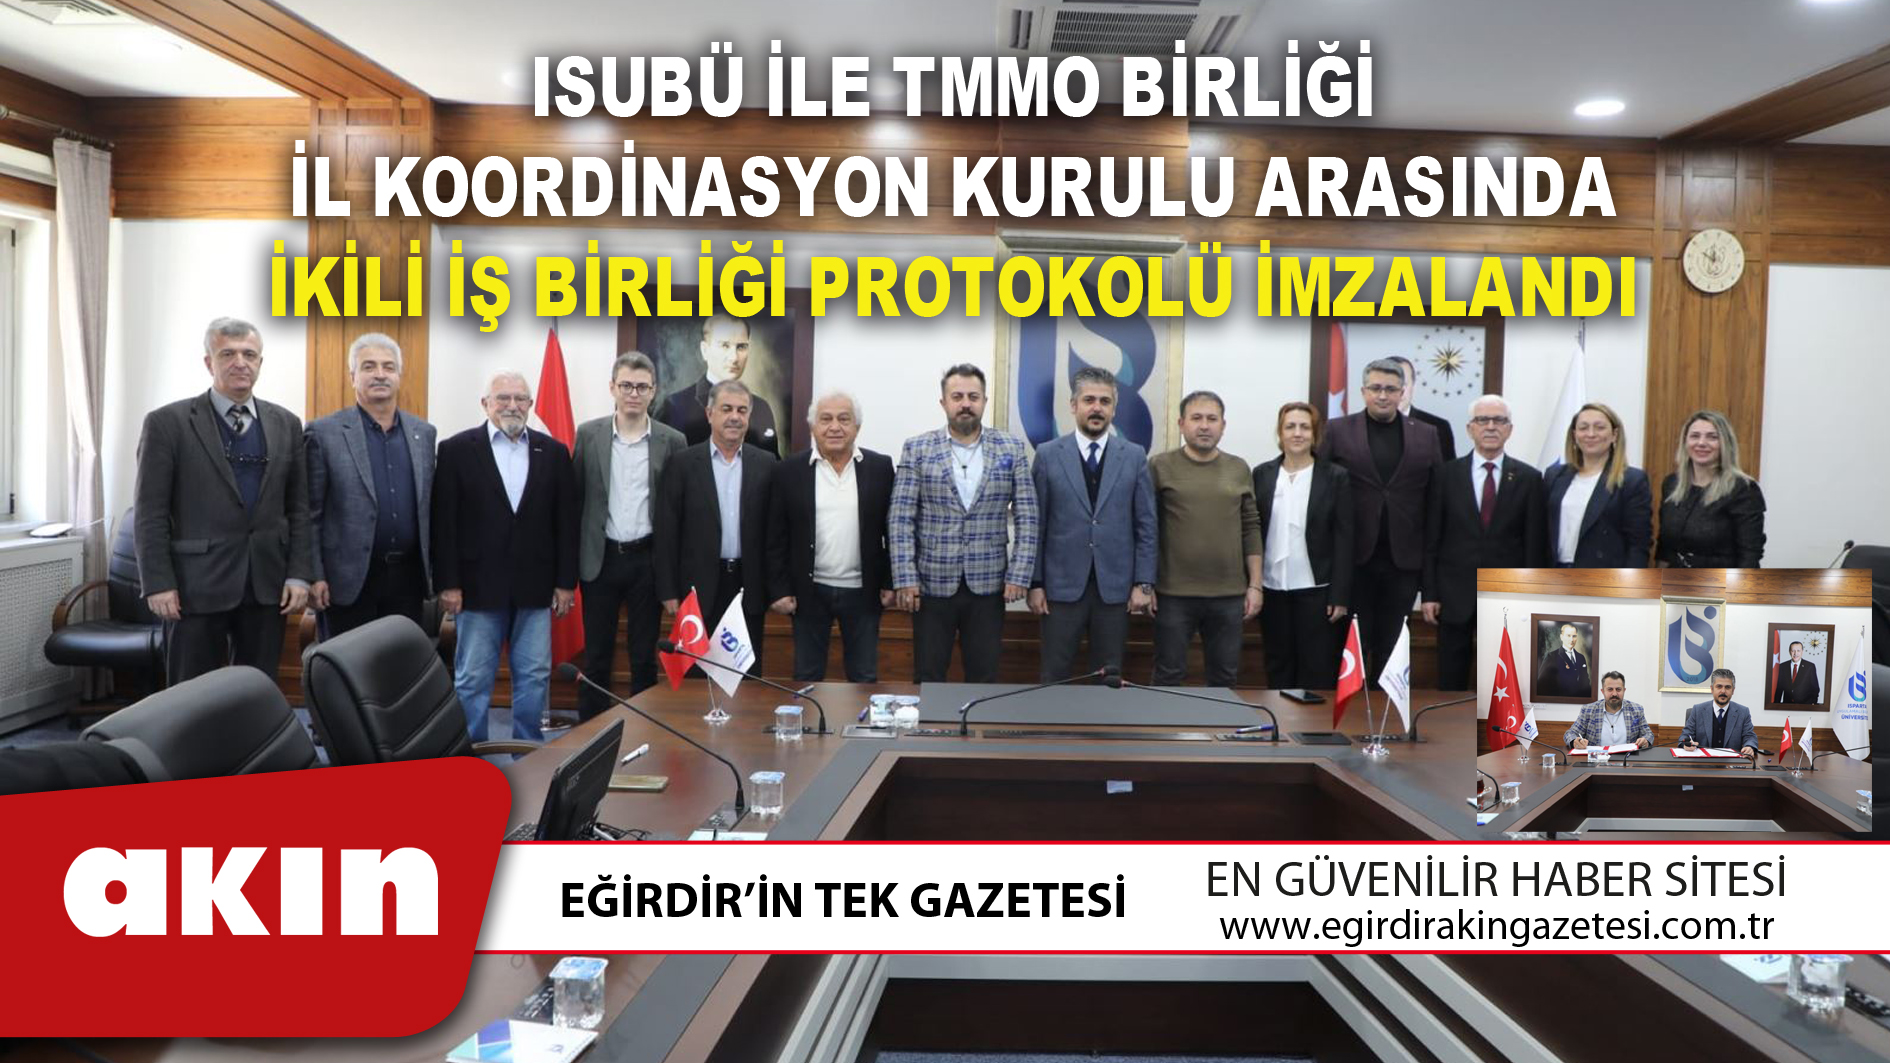 ISUBÜ ile TMMO Birliği İl Koordinasyon Kurulu Arasında İkili İş Birliği Protokolü İmzalandı